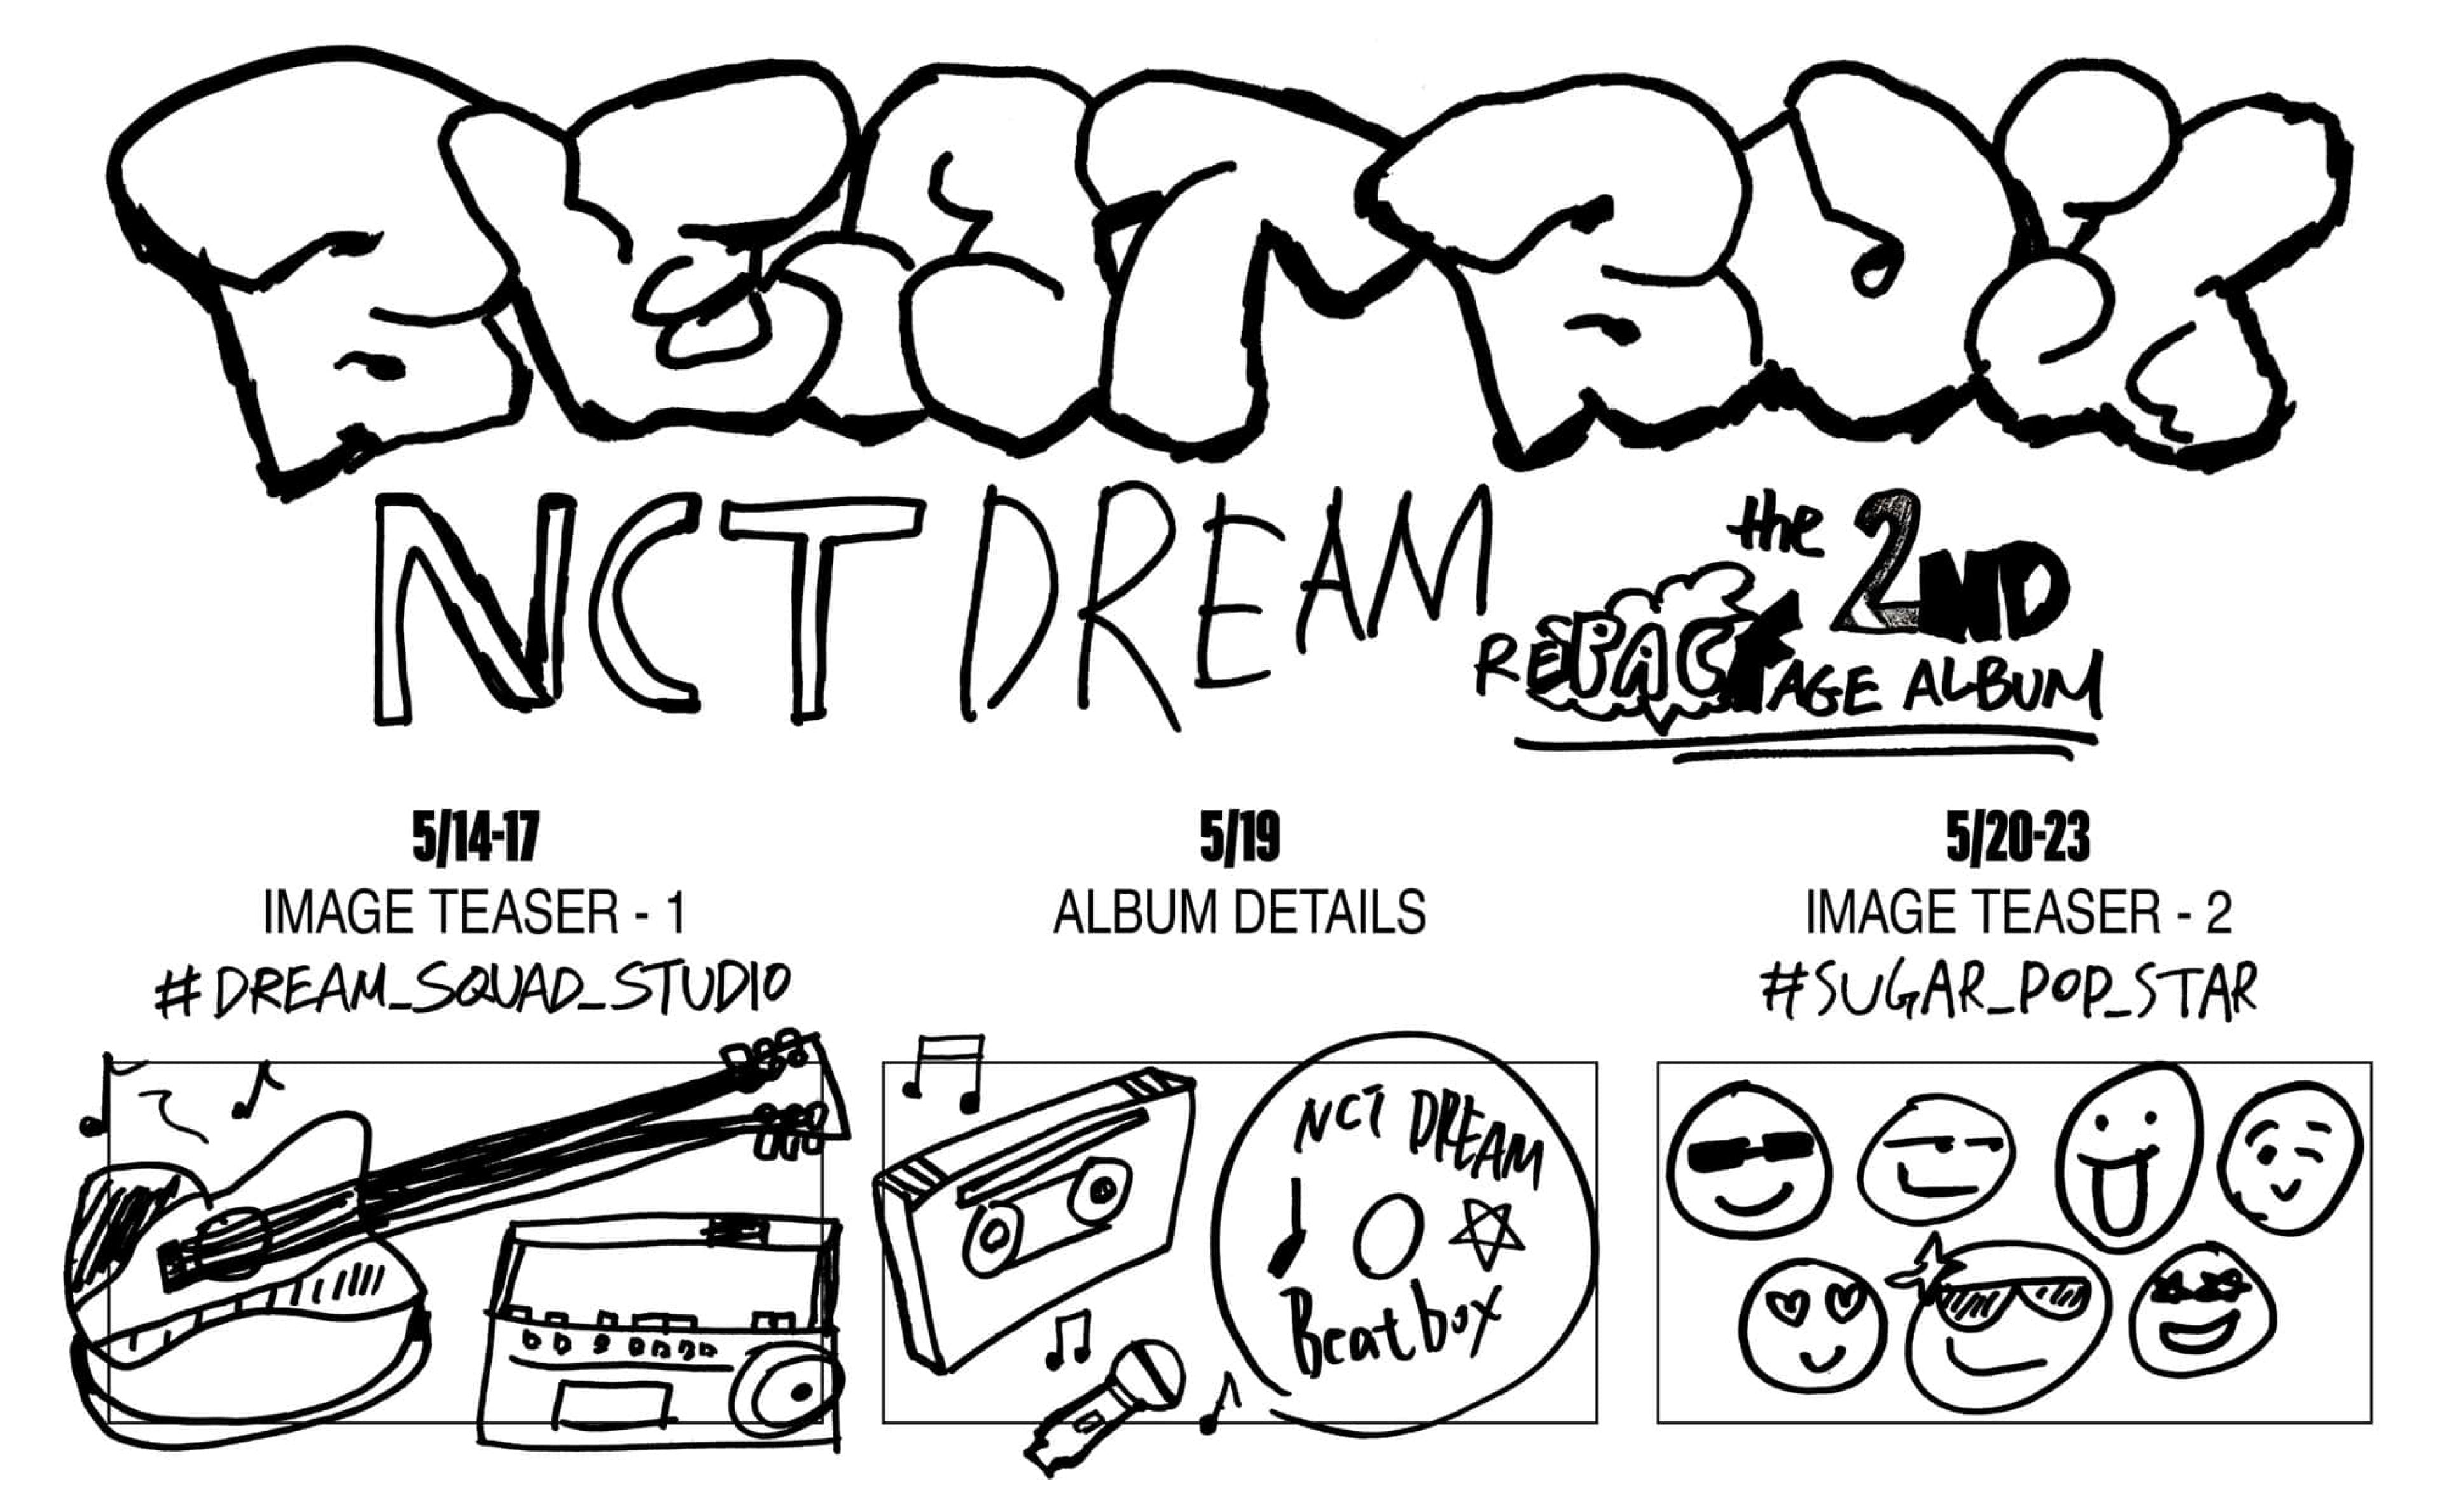 NCT Dream kehrt mit 